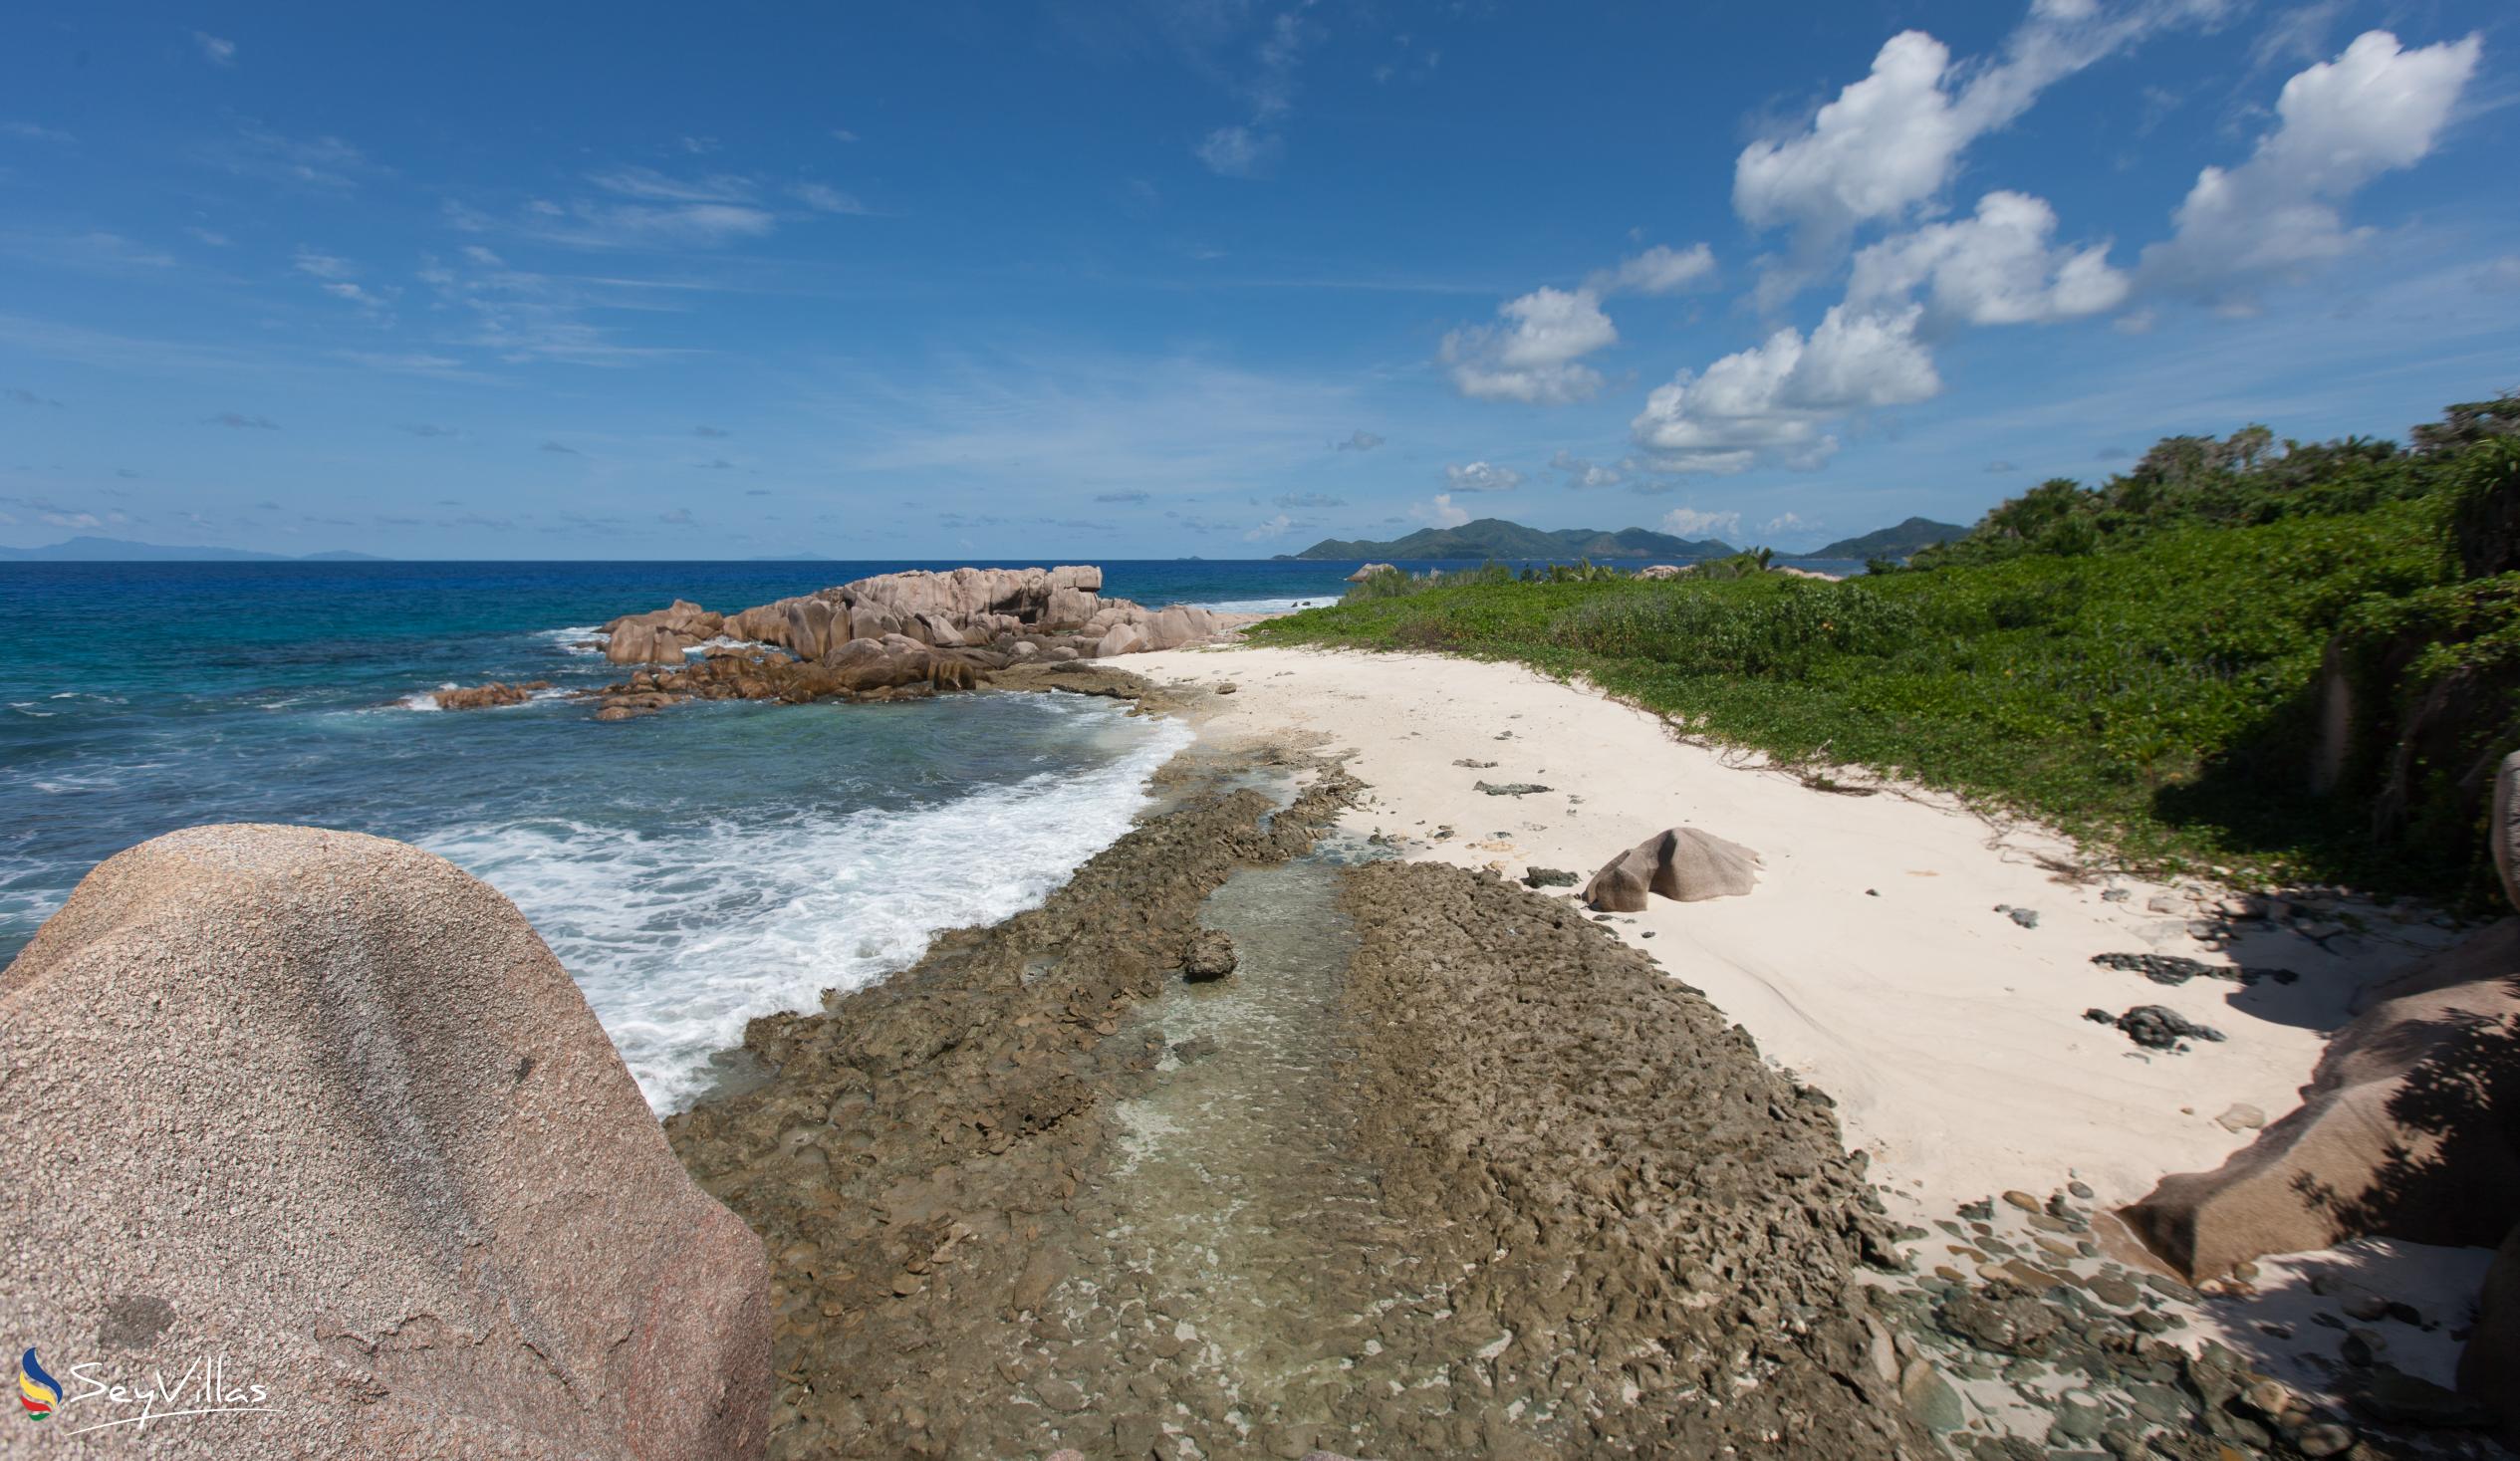 Photo 5: Anse aux Cèdres - La Digue (Seychelles)